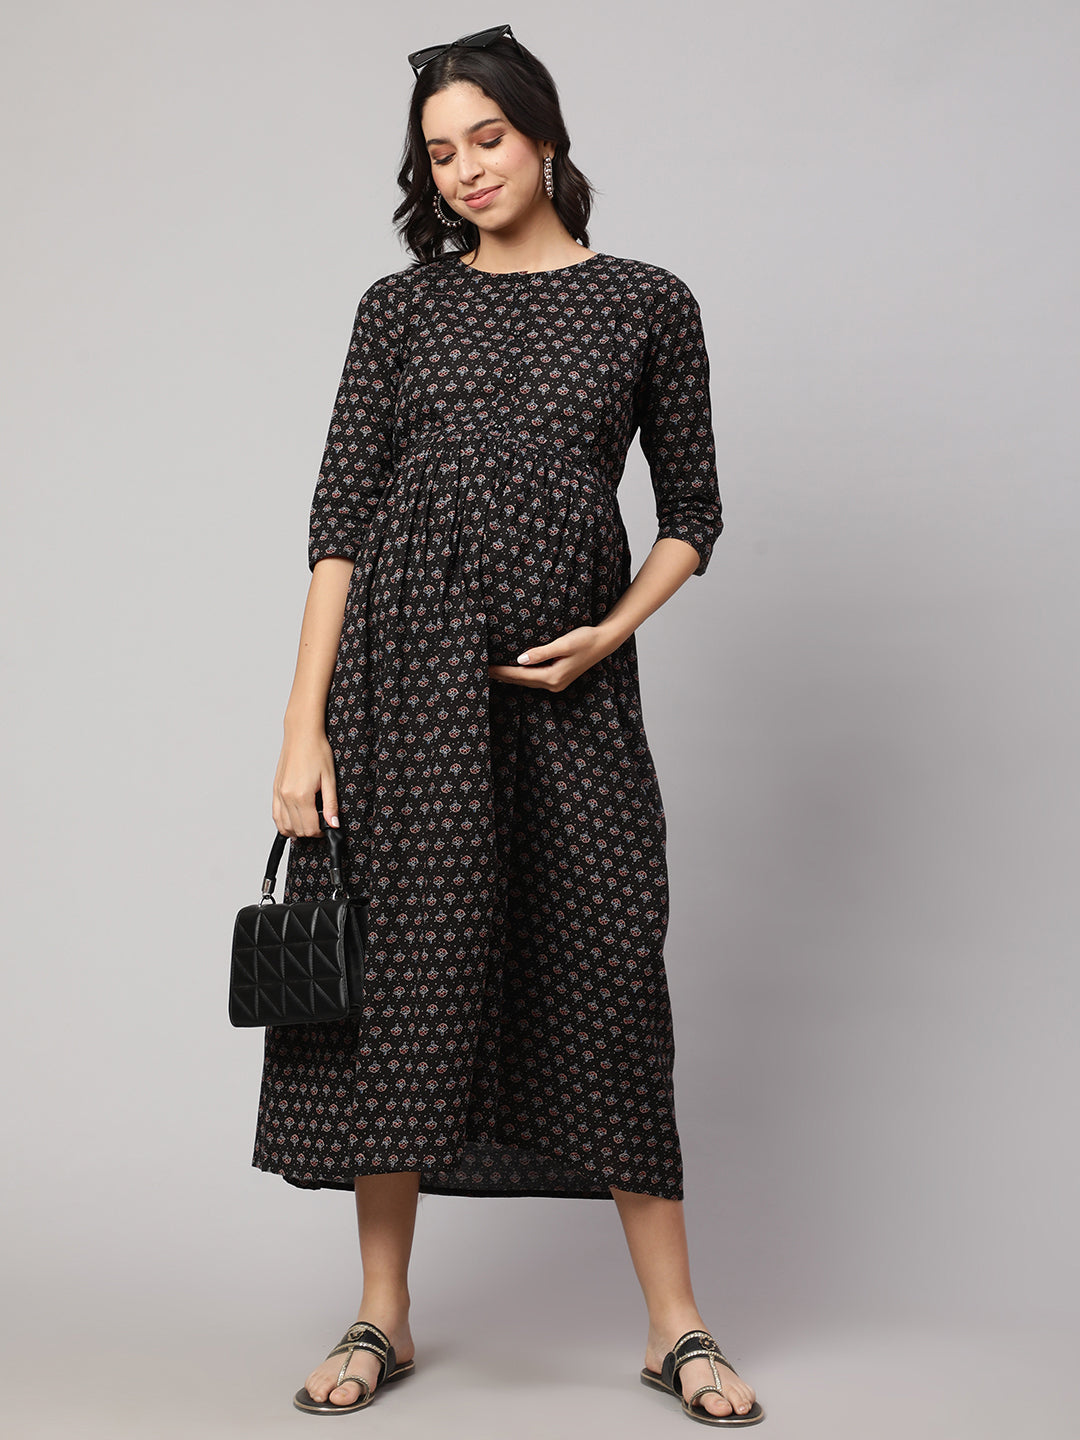 Women's Black Printed Flared Maternity Dress - Nayo Clothing